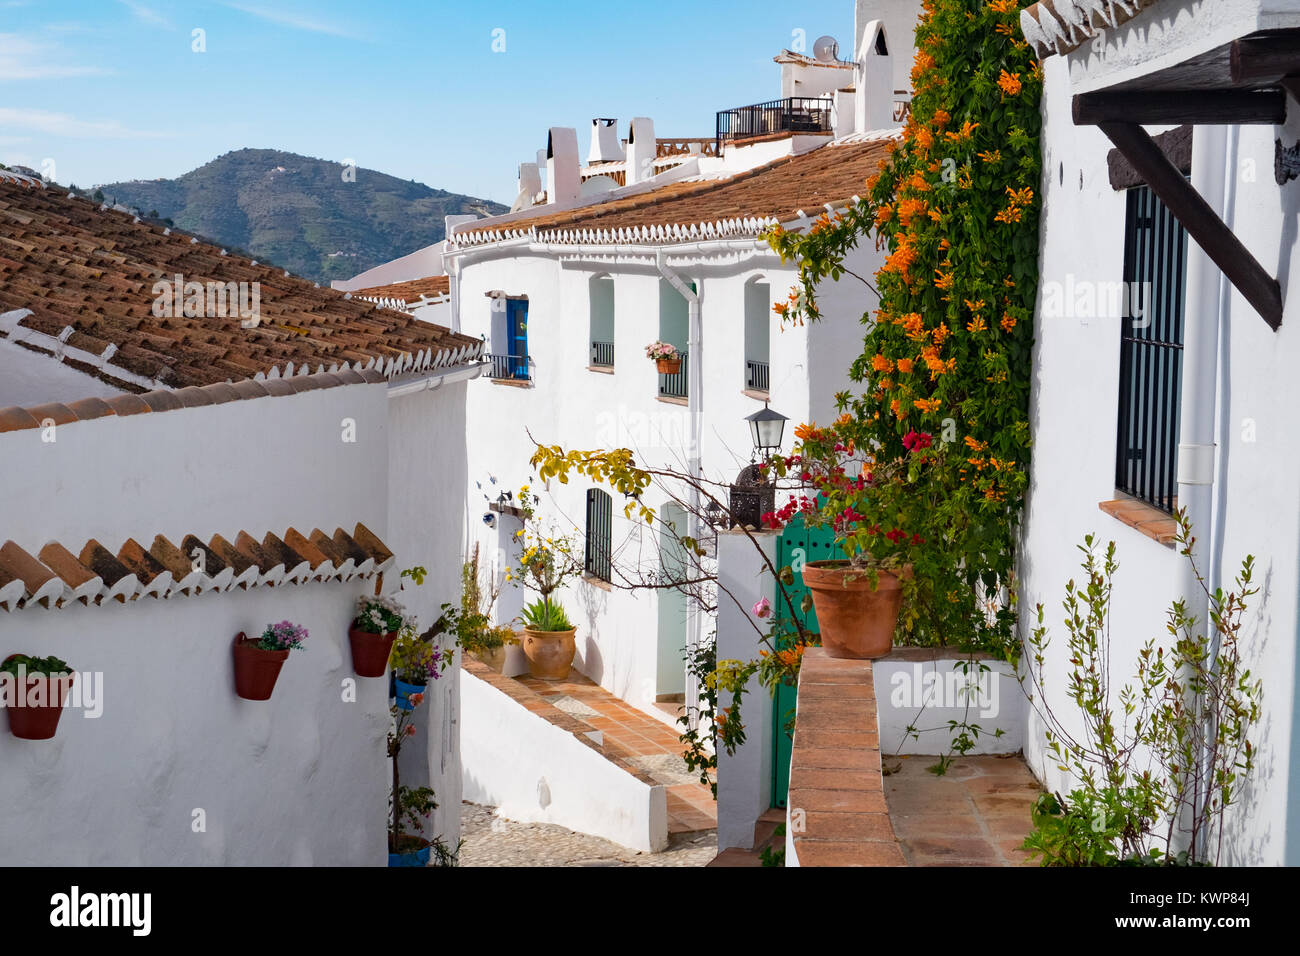 El Acebuchal, un villaggio bianco o peublo blanco, nella regione dell'Andalusia a est di Malaga. Una volta abbandonato il borgo è stato recentemente restaurato. Foto Stock